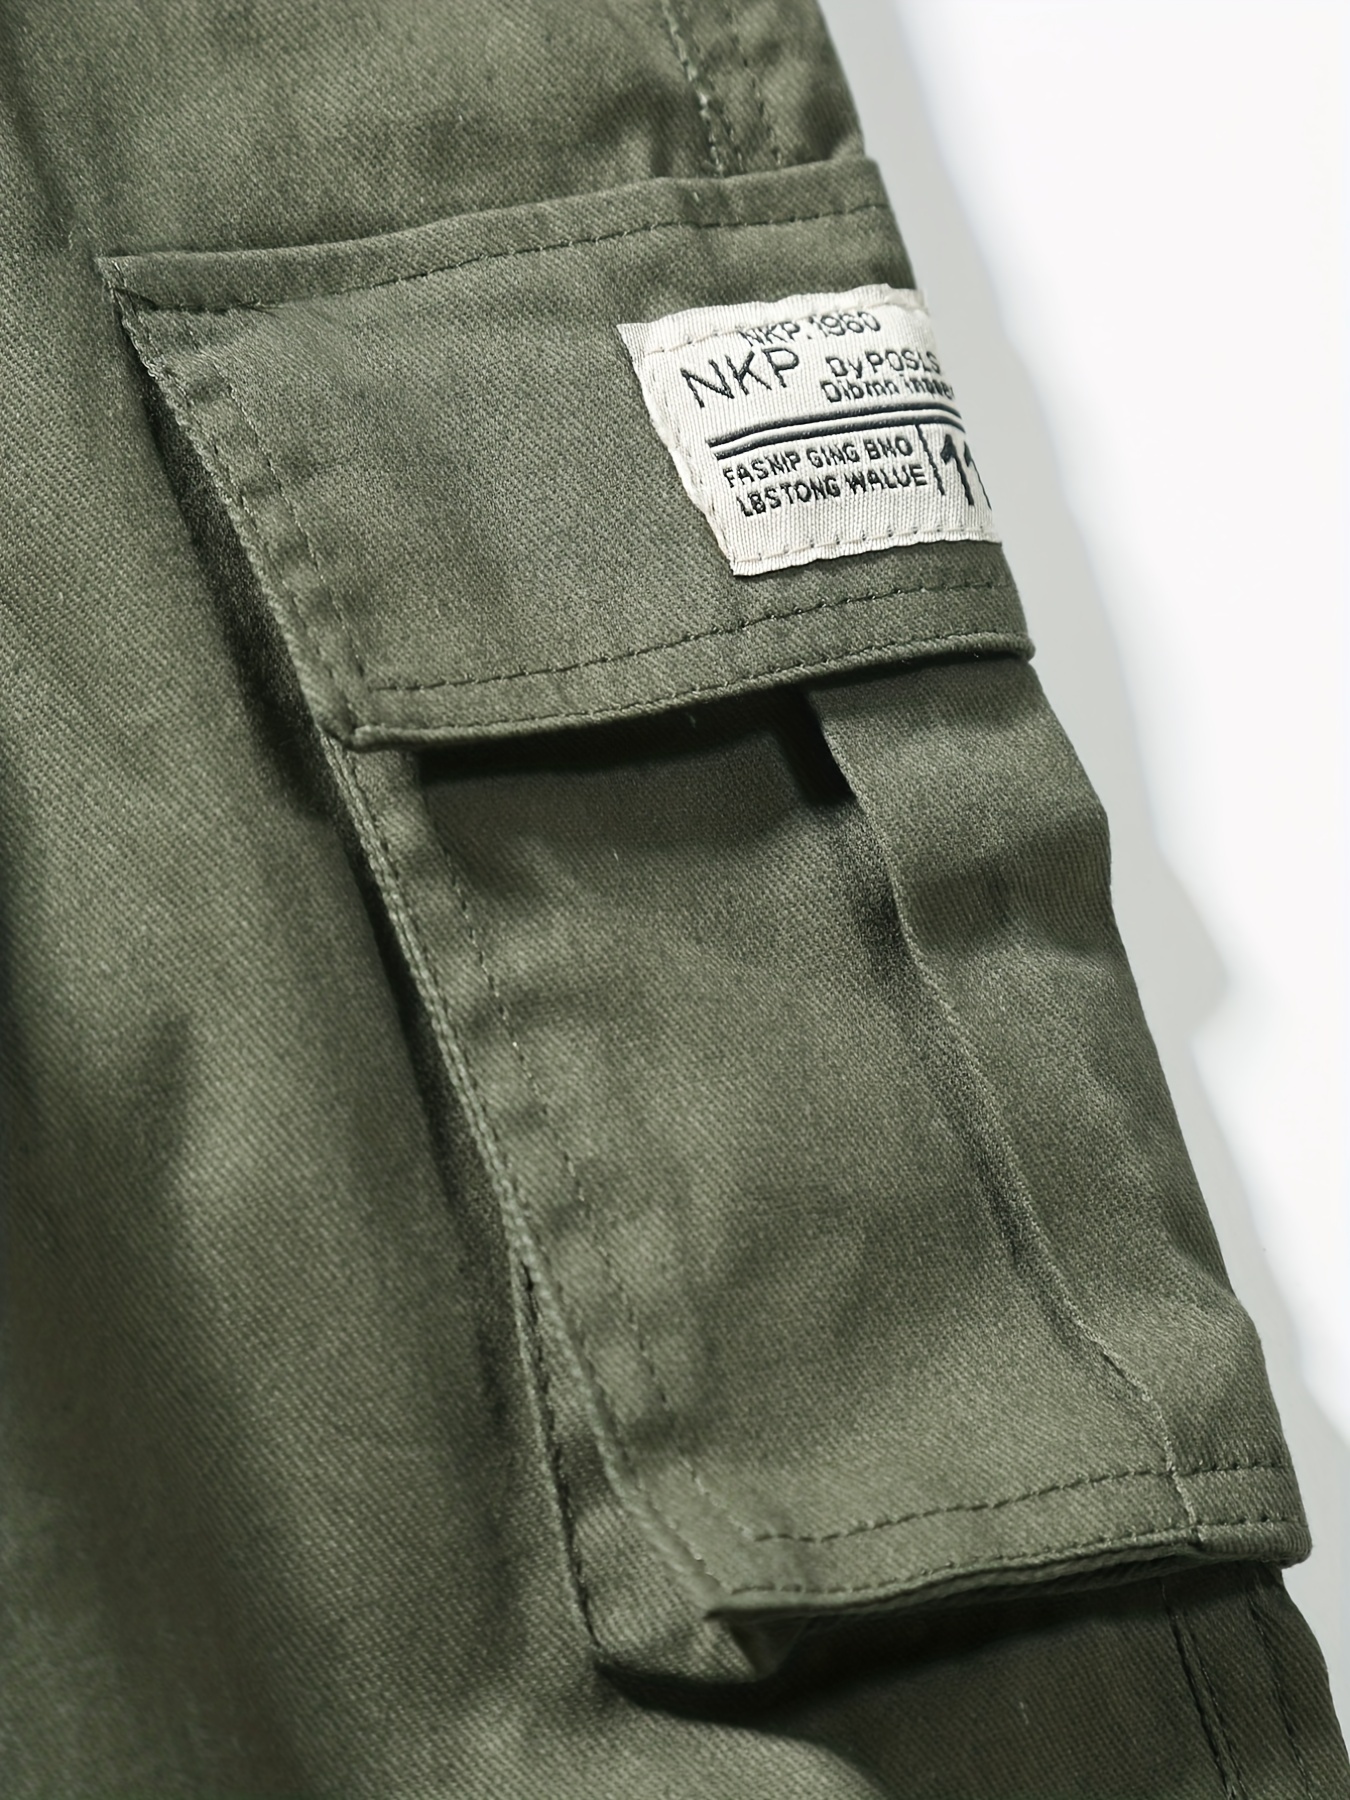 Pantalon cargo métallisé poche à rabat et cordon de serrage